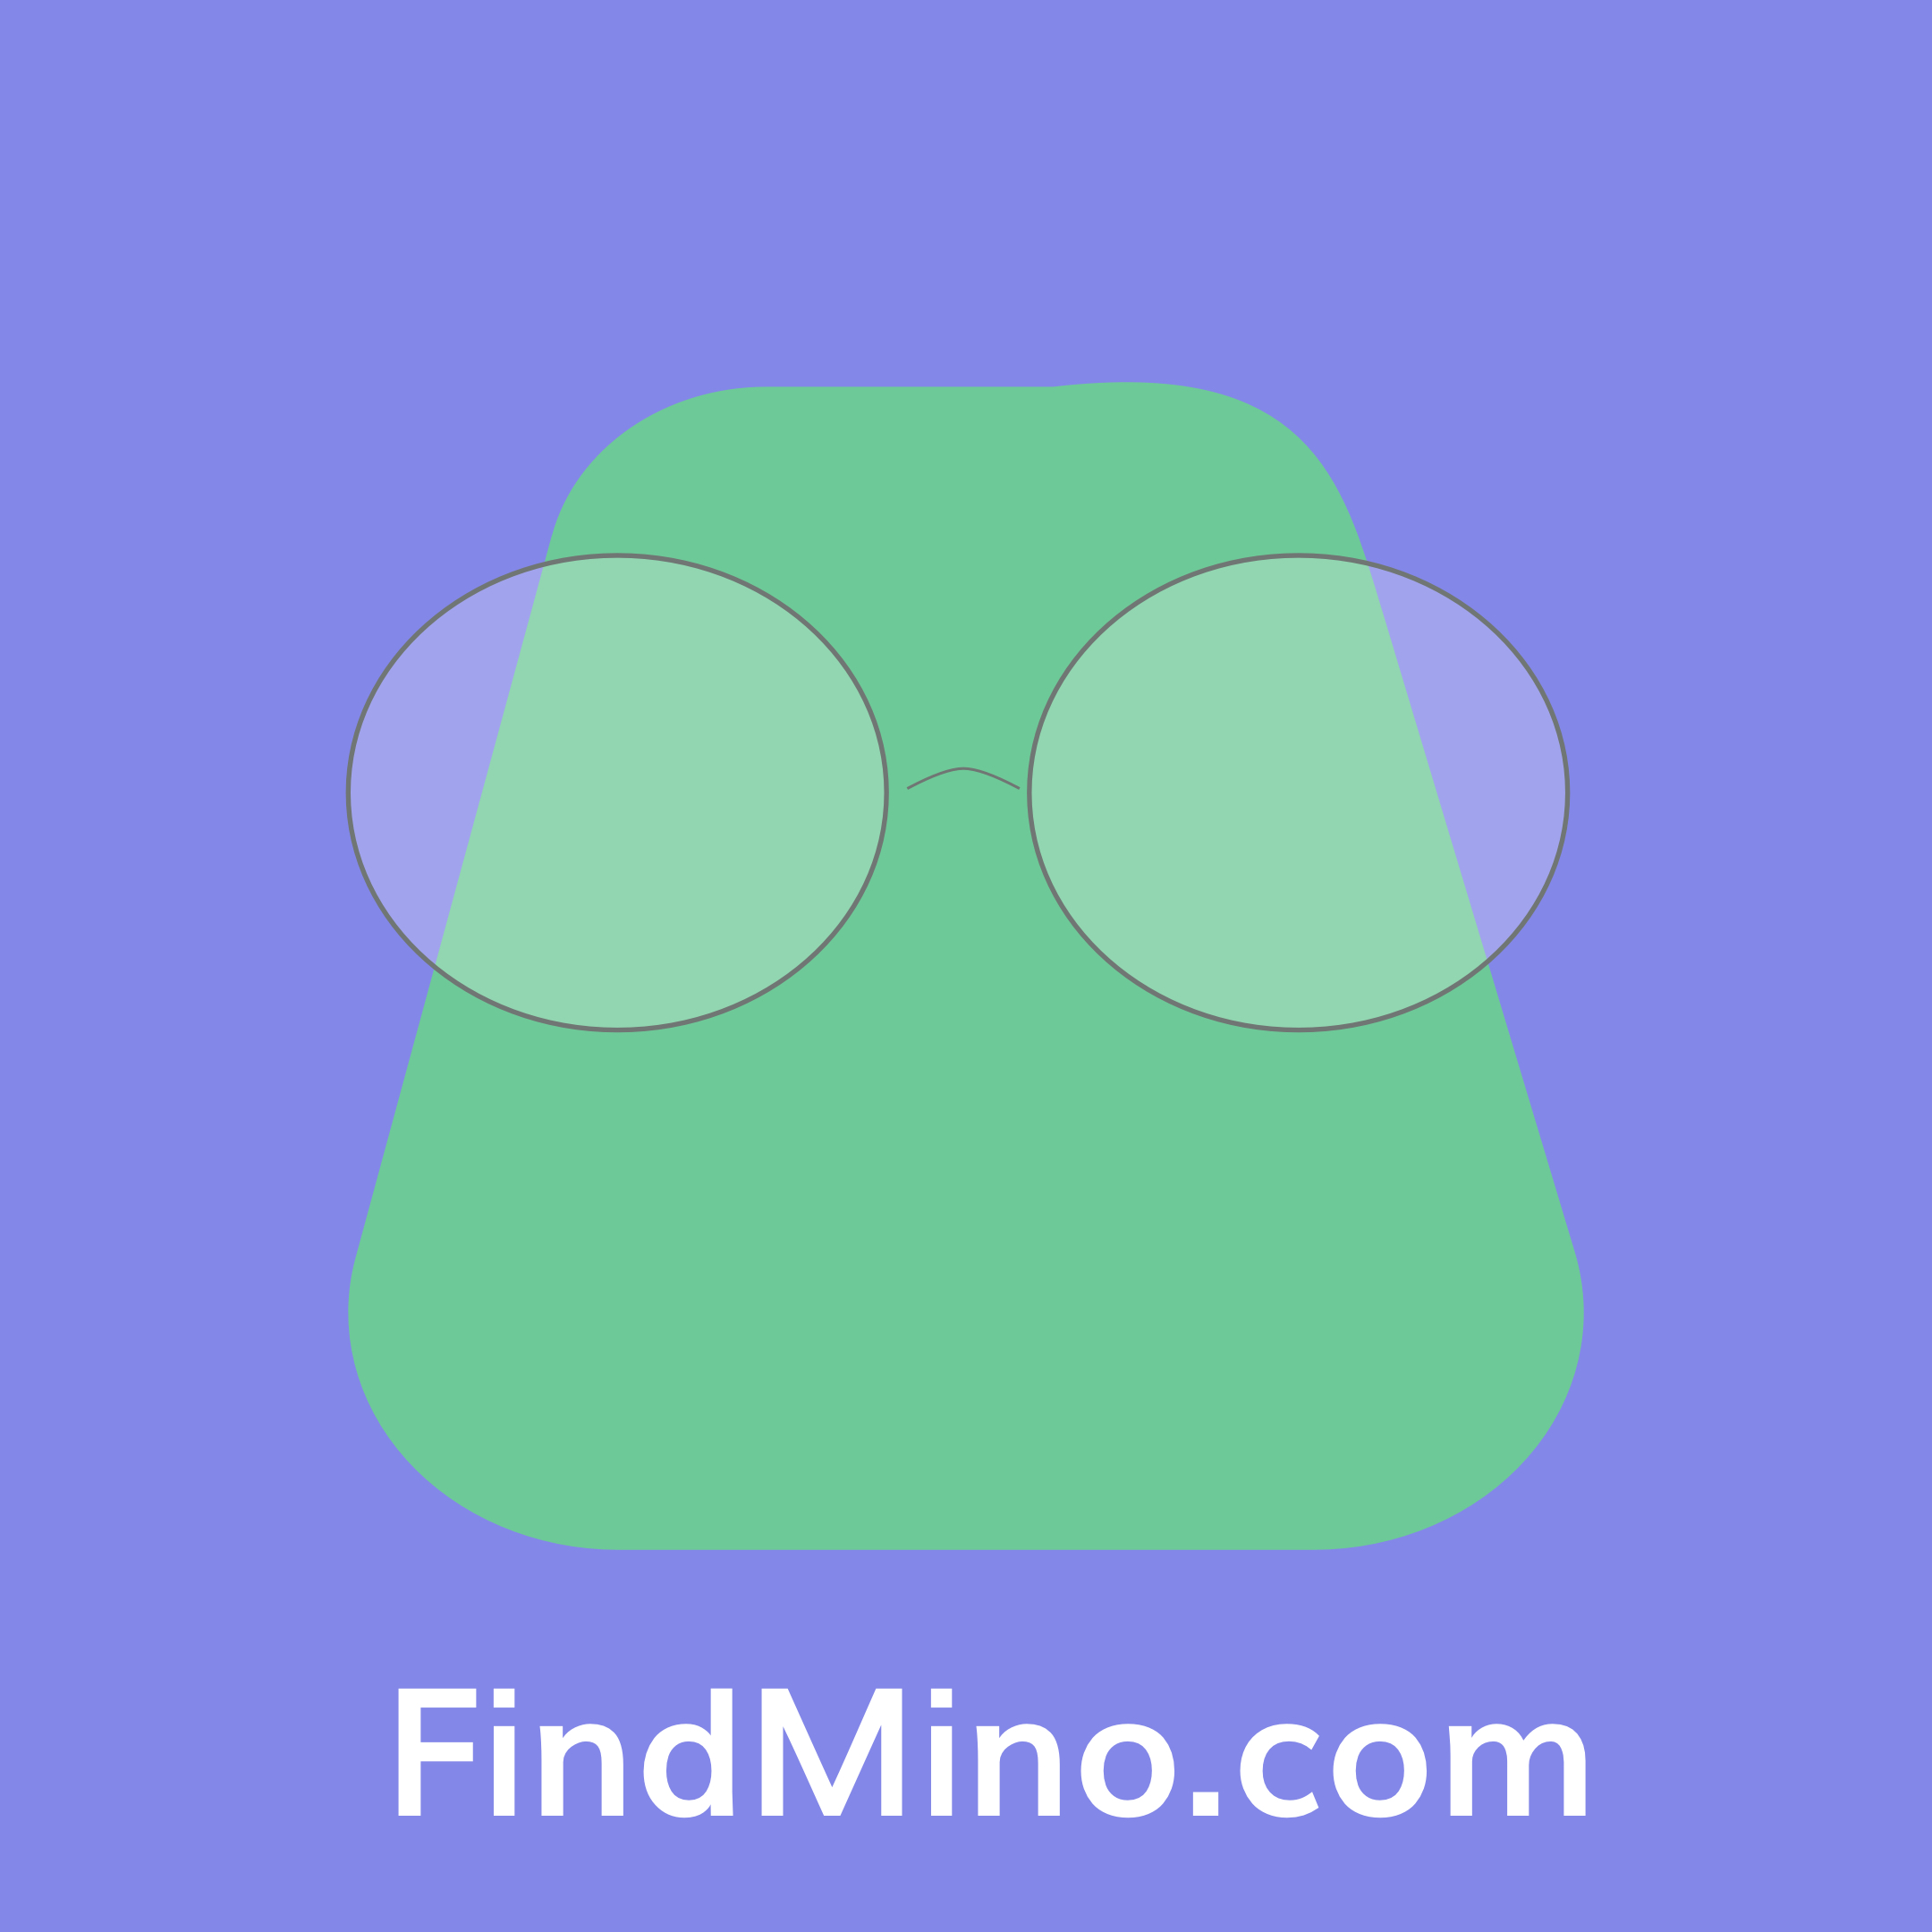 Find Mino